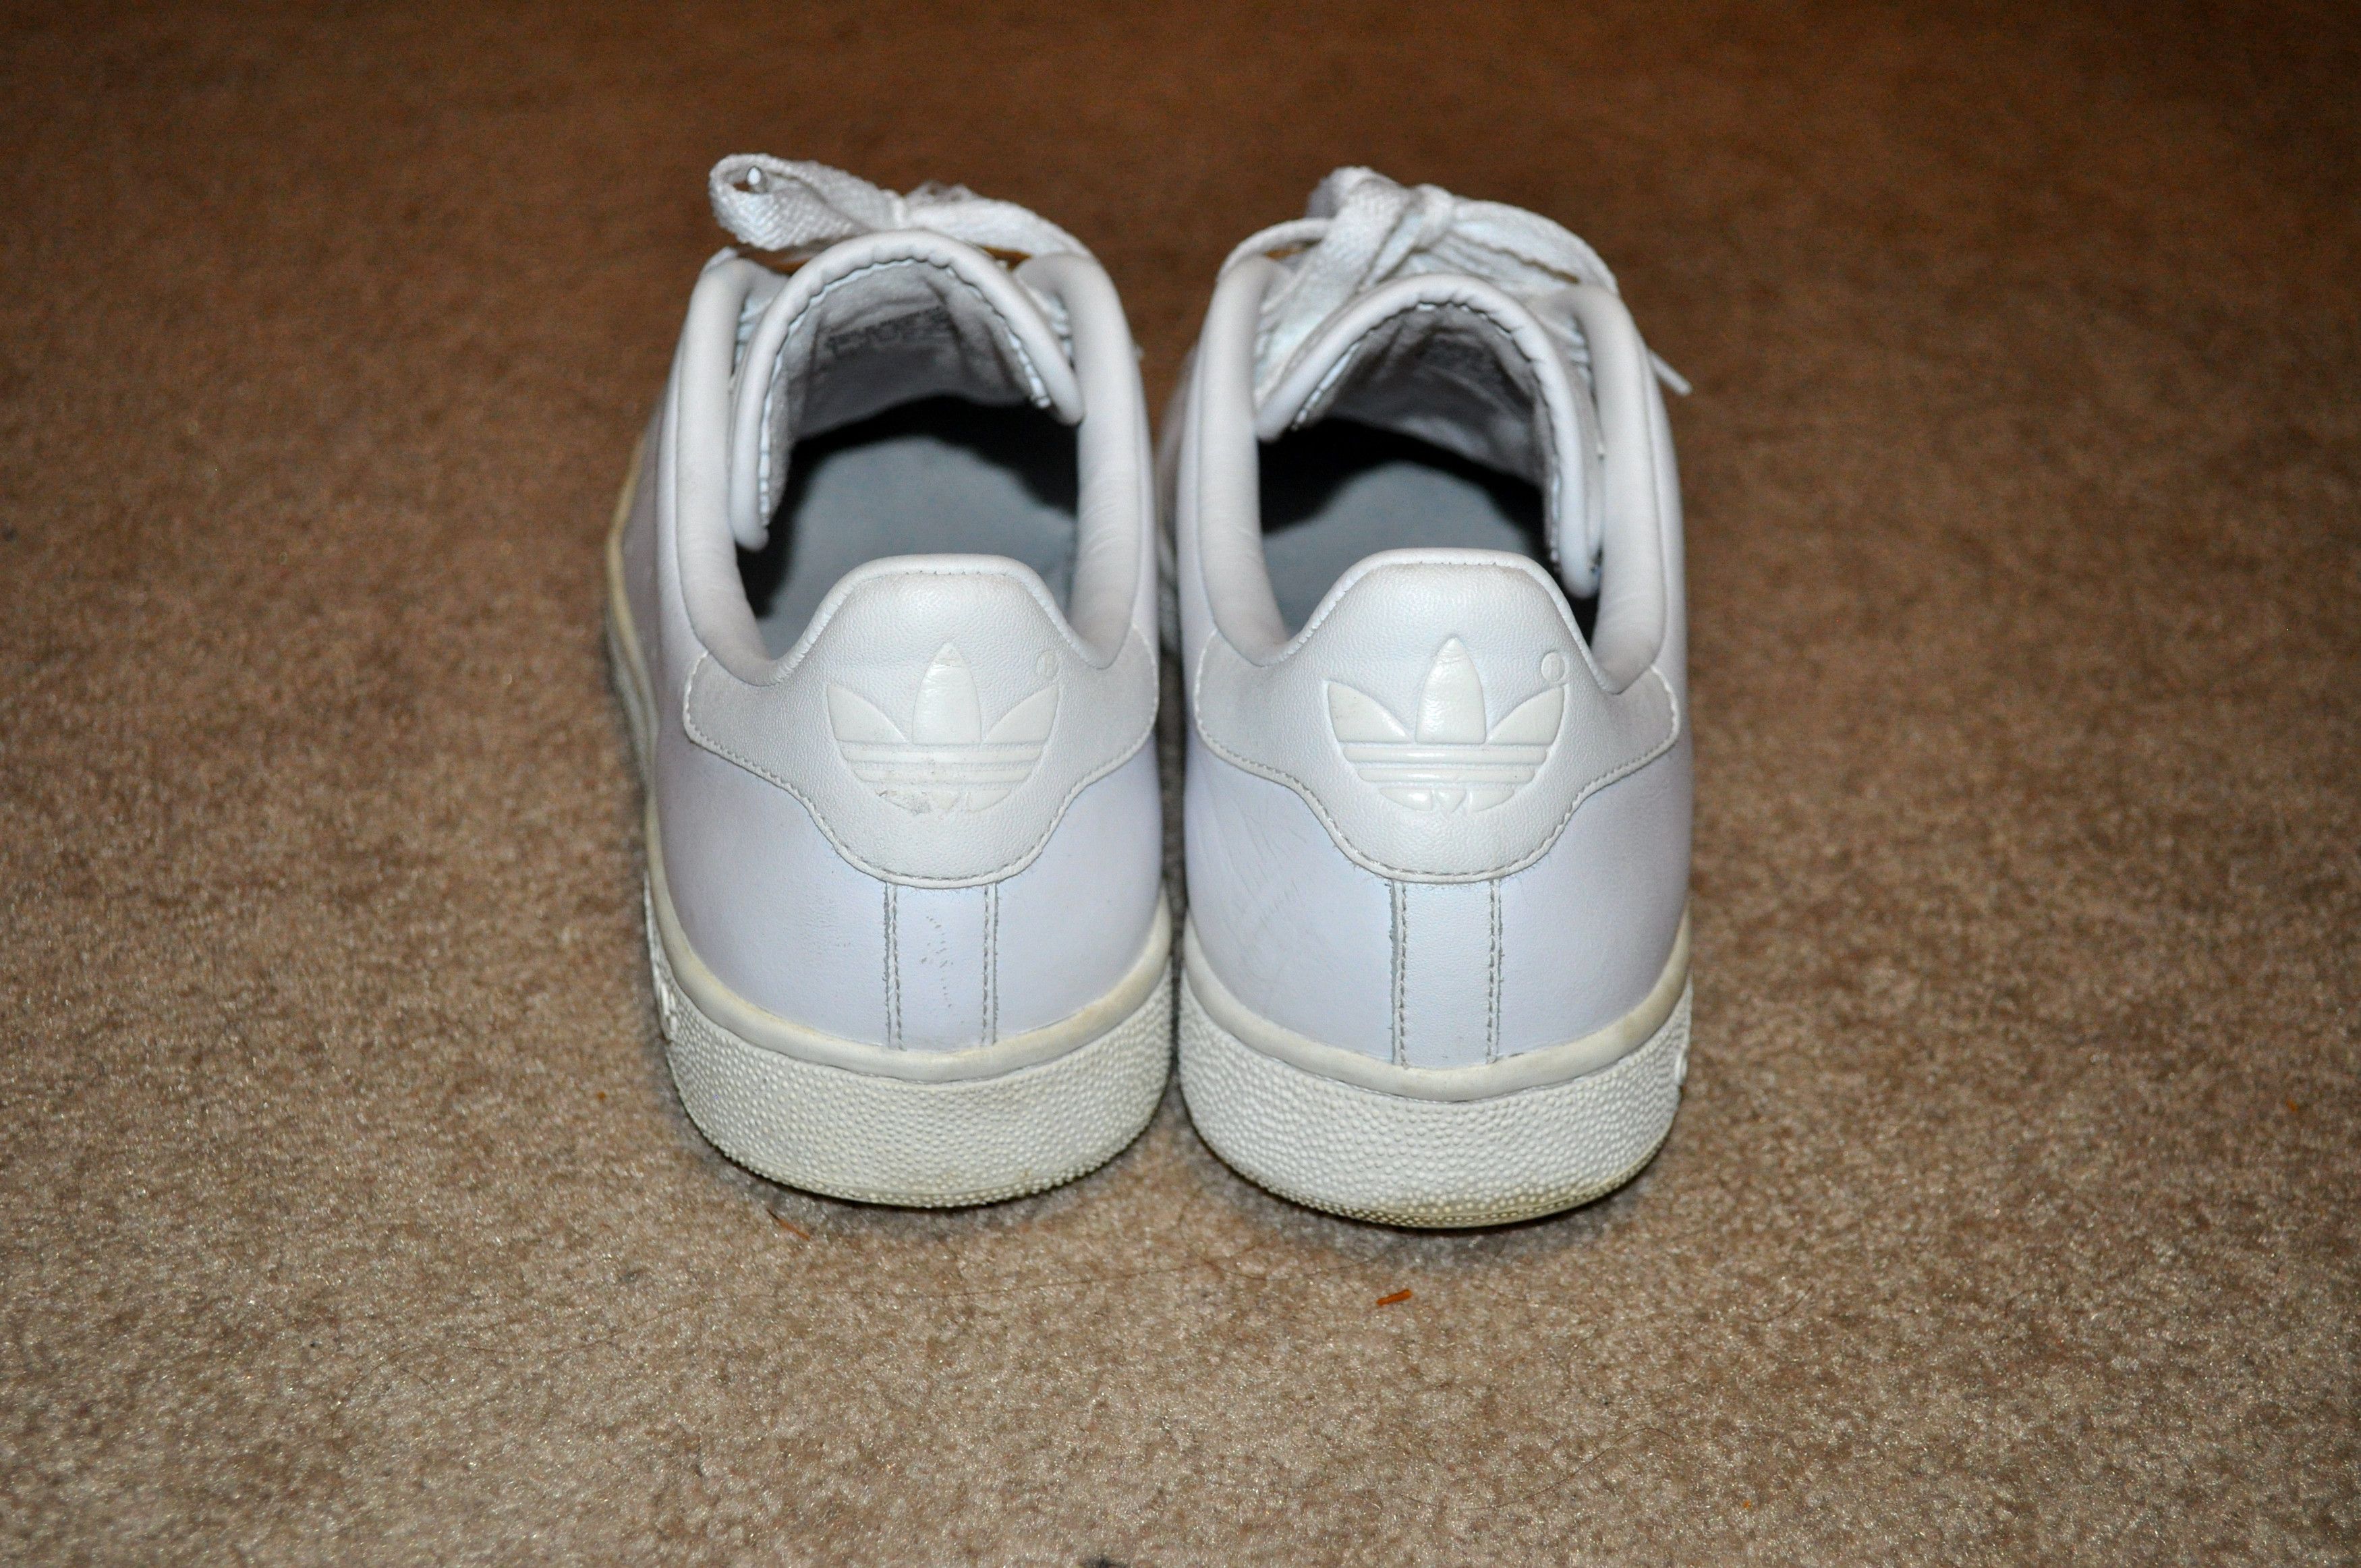 Adidas Stan Smith White/White Size US 8 / EU 41 - 2 Preview